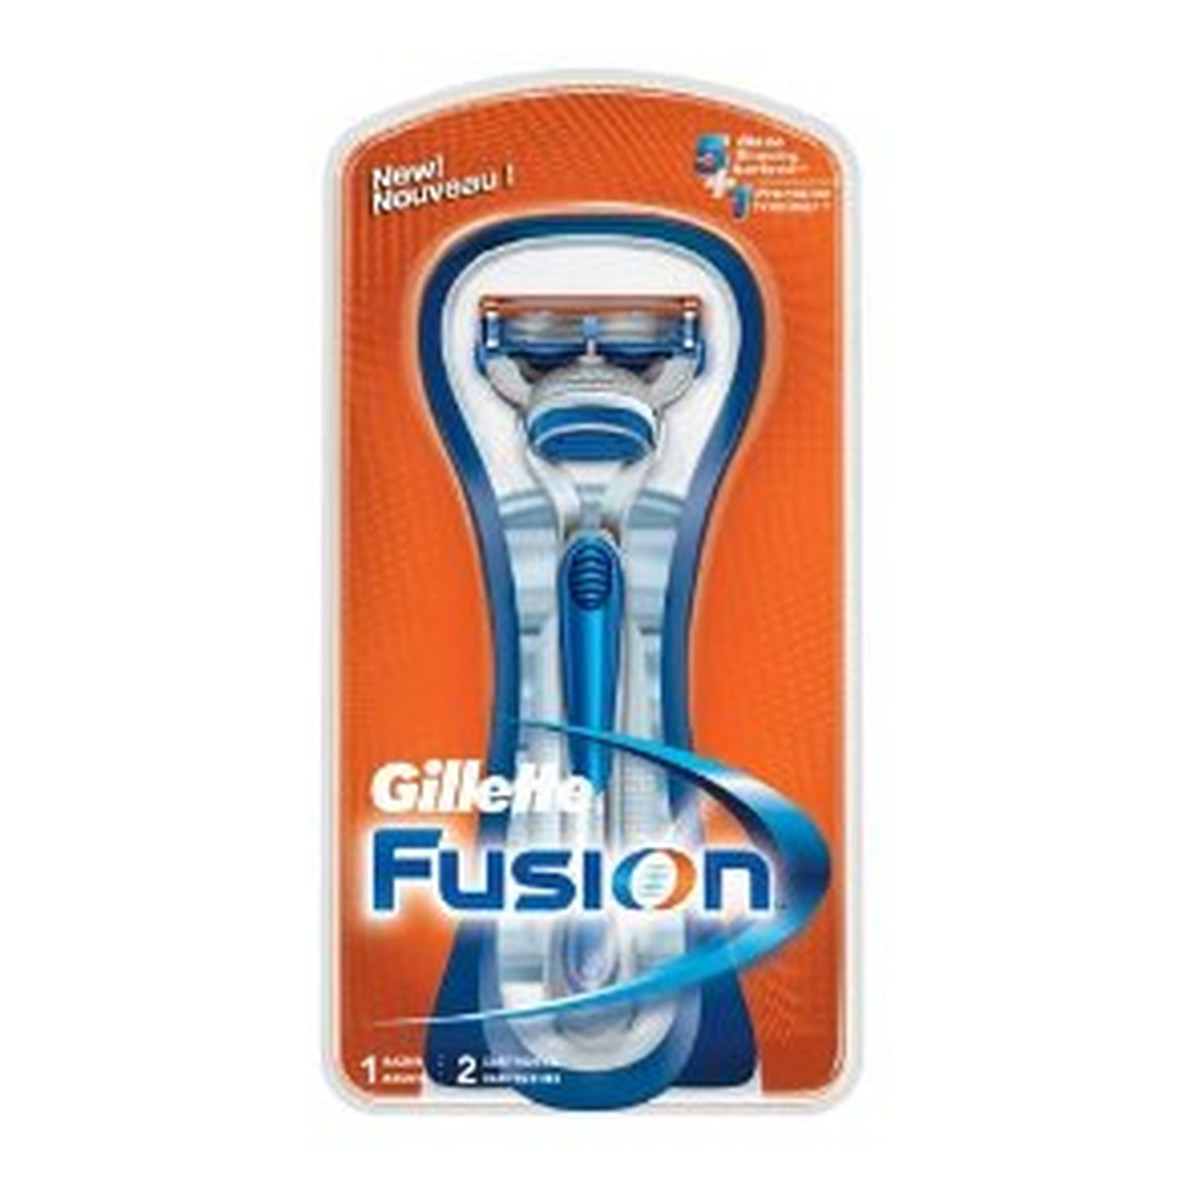 Gillette Fusion Manual Maszynka + 2 Wkłady 21g